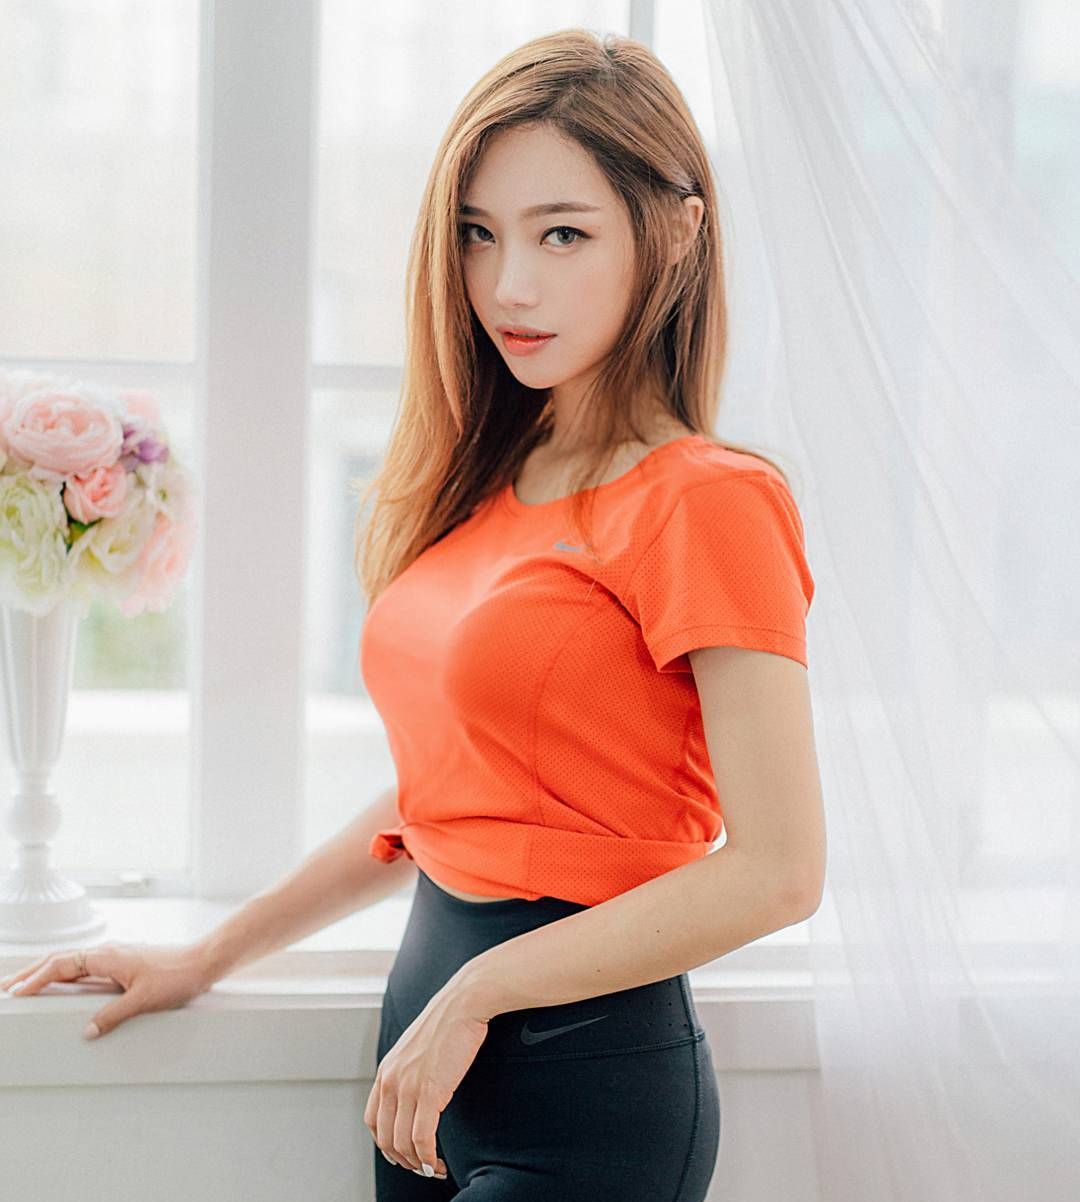 韓國性感嫩模 擁有精緻臉蛋加上完美身材 這簡直不科學阿... - 最精采豐富的世界各國COSER、美女、網紅